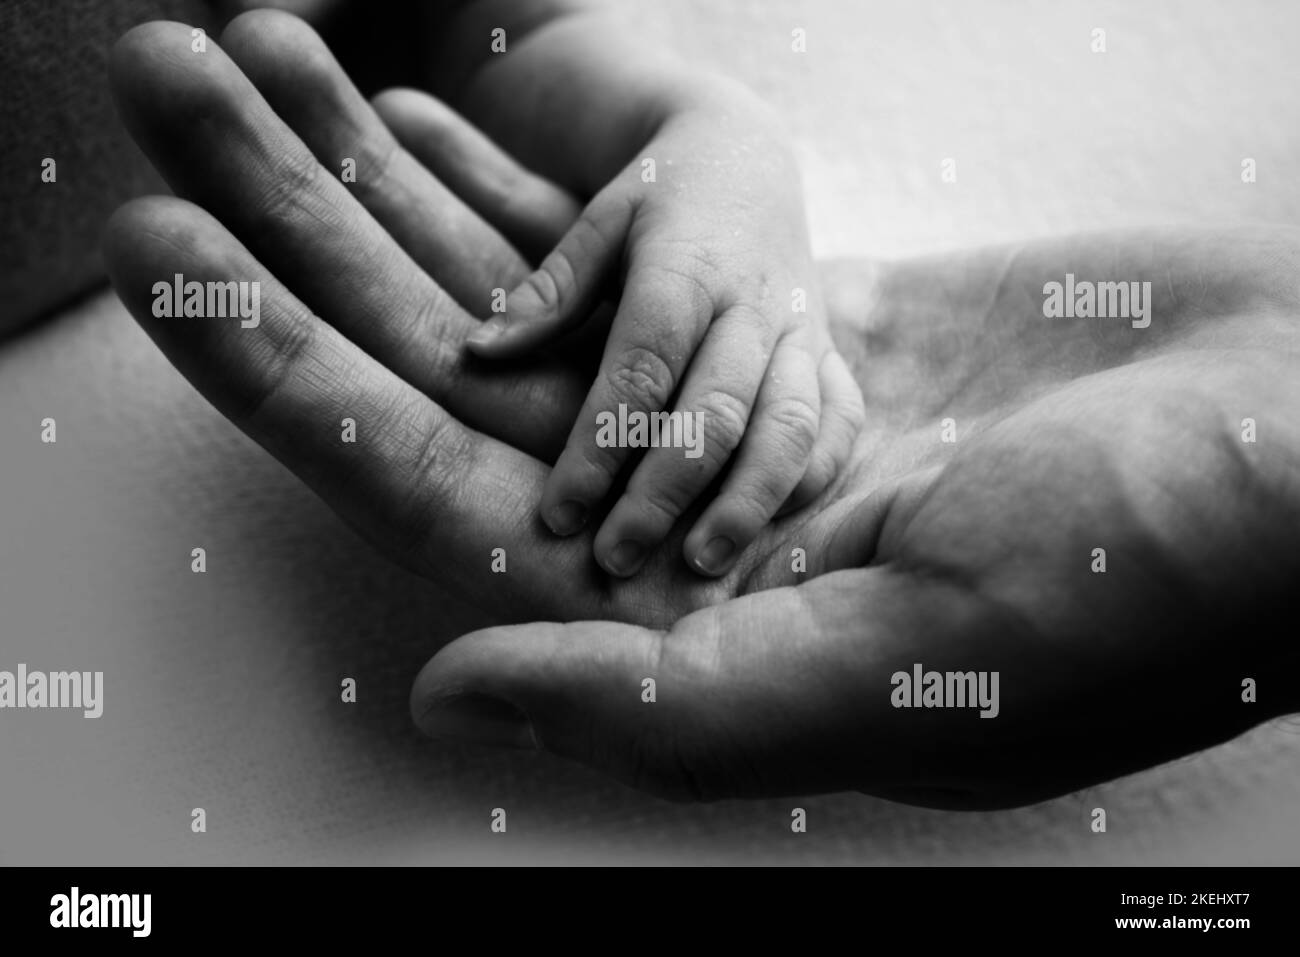 Ein Elternteil hält die Hand eines neugeborenen Kindes. Schwarzweiß-Foto. Stockfoto